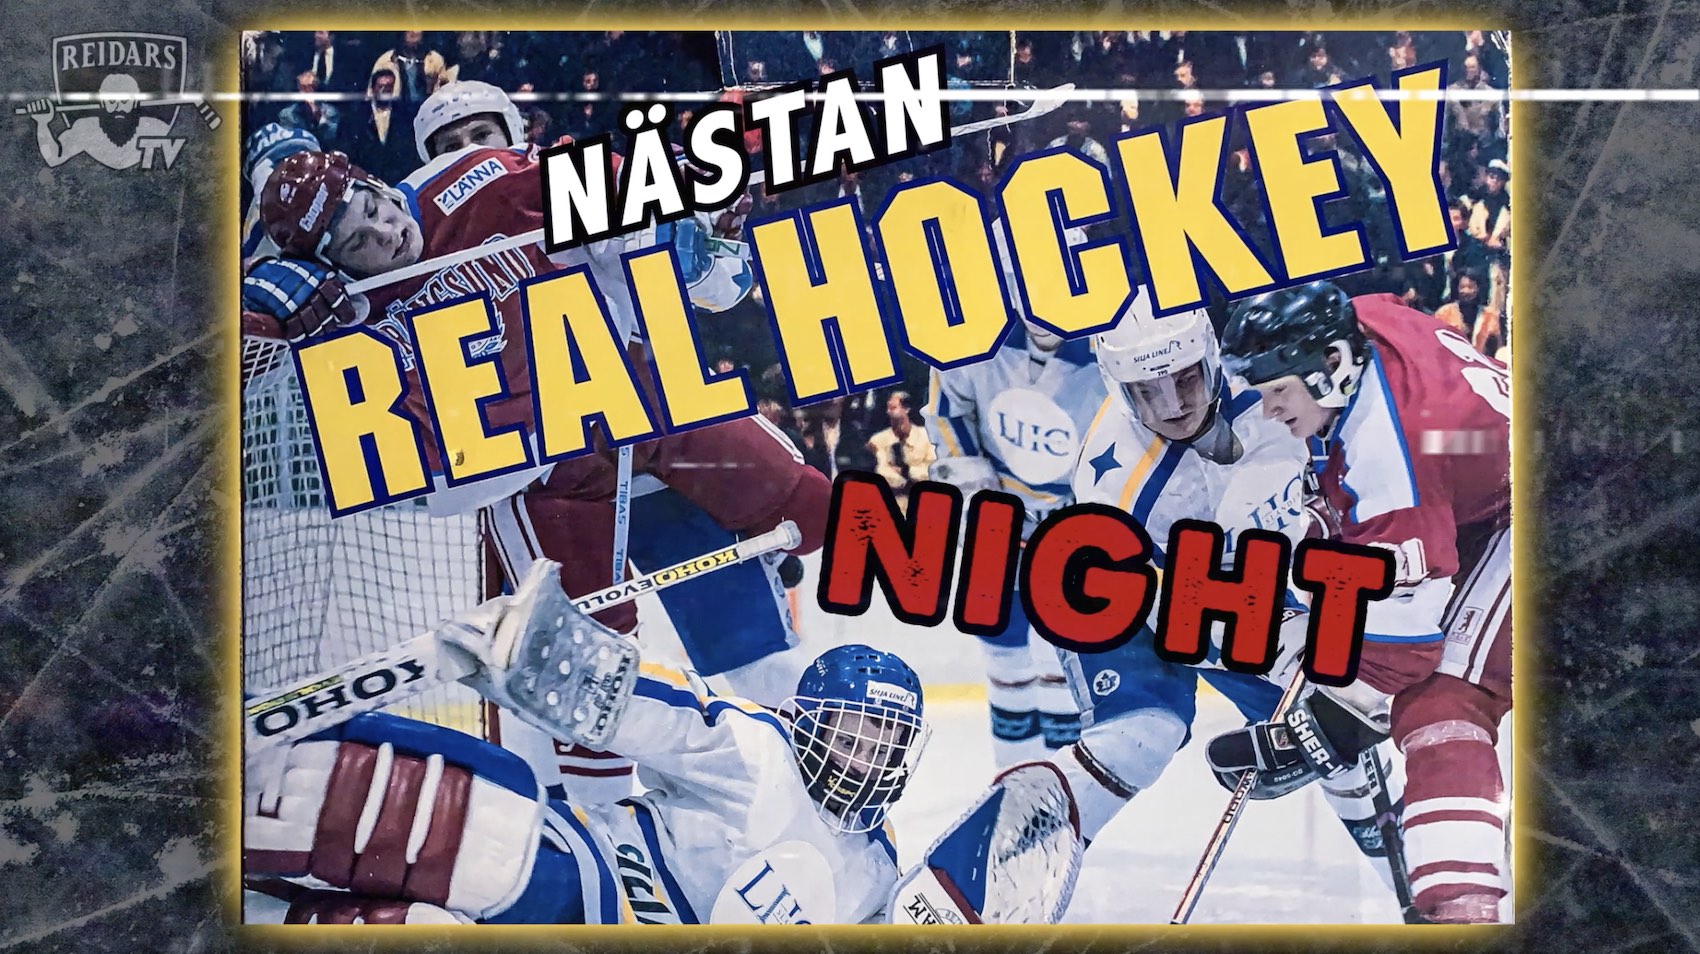 Otteluennakkovideo: ”Nästan Real Hockey Night”!